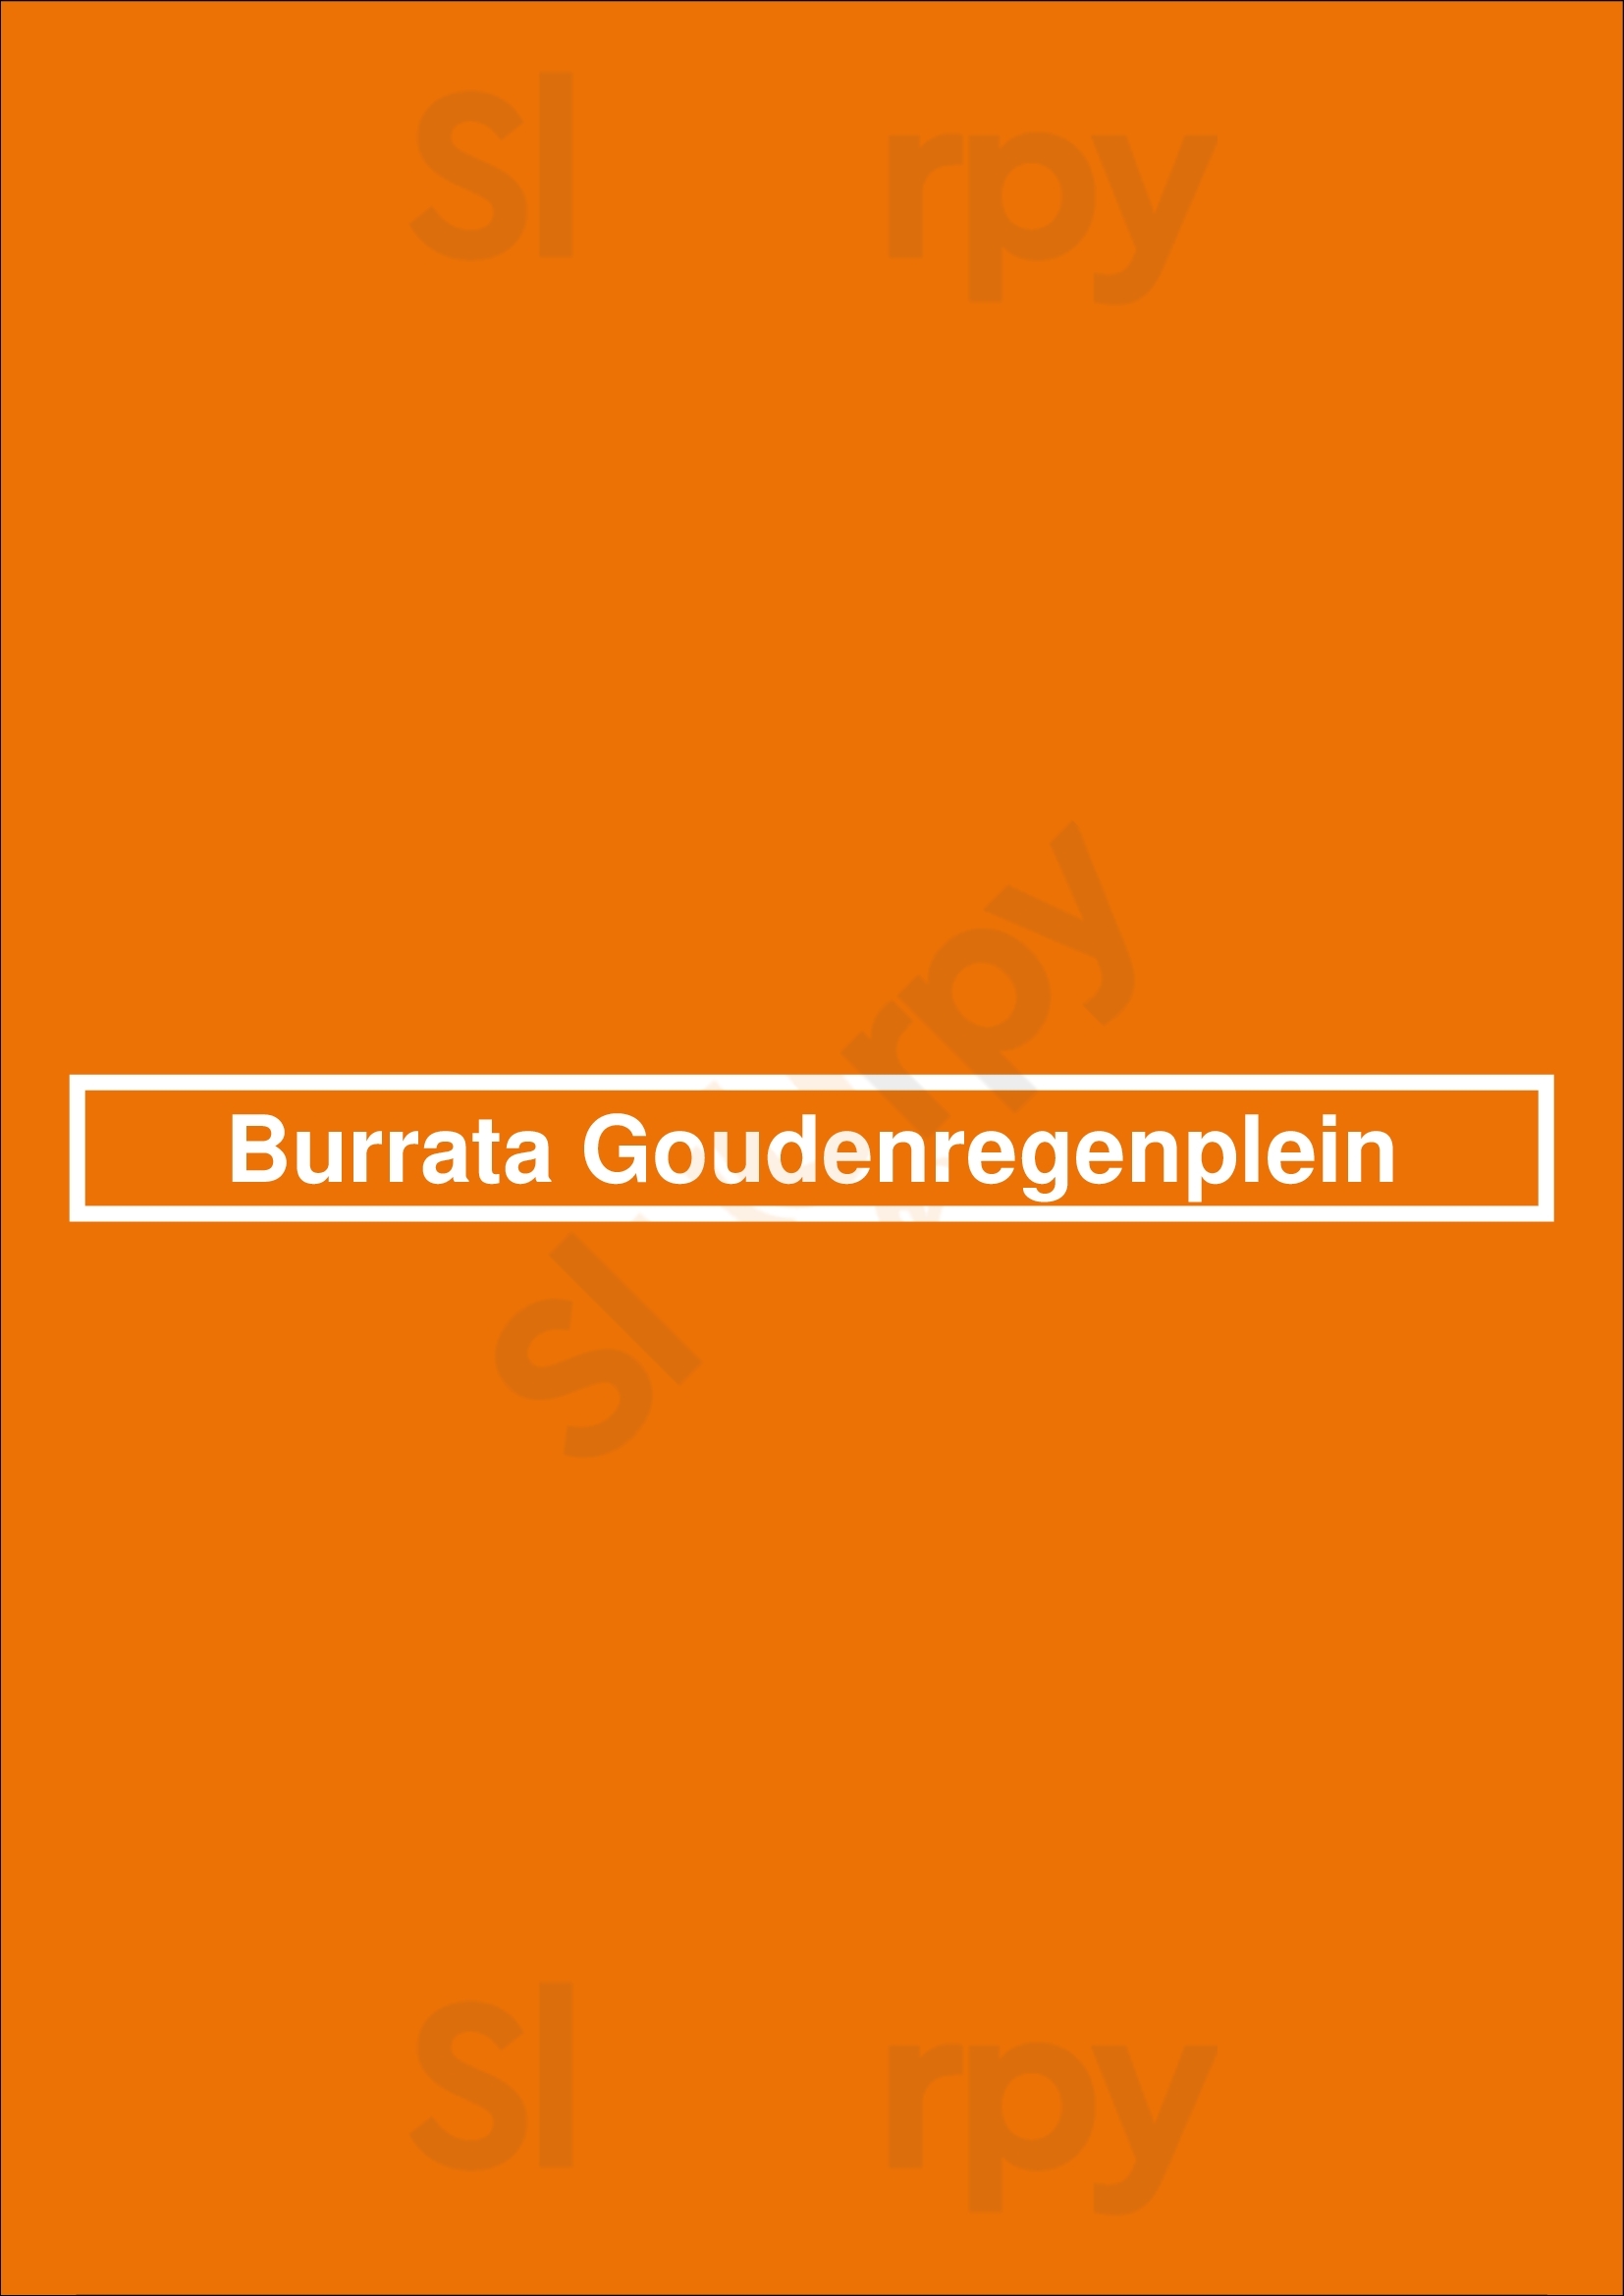 Burrata Goudenregenplein Den Haag Menu - 1